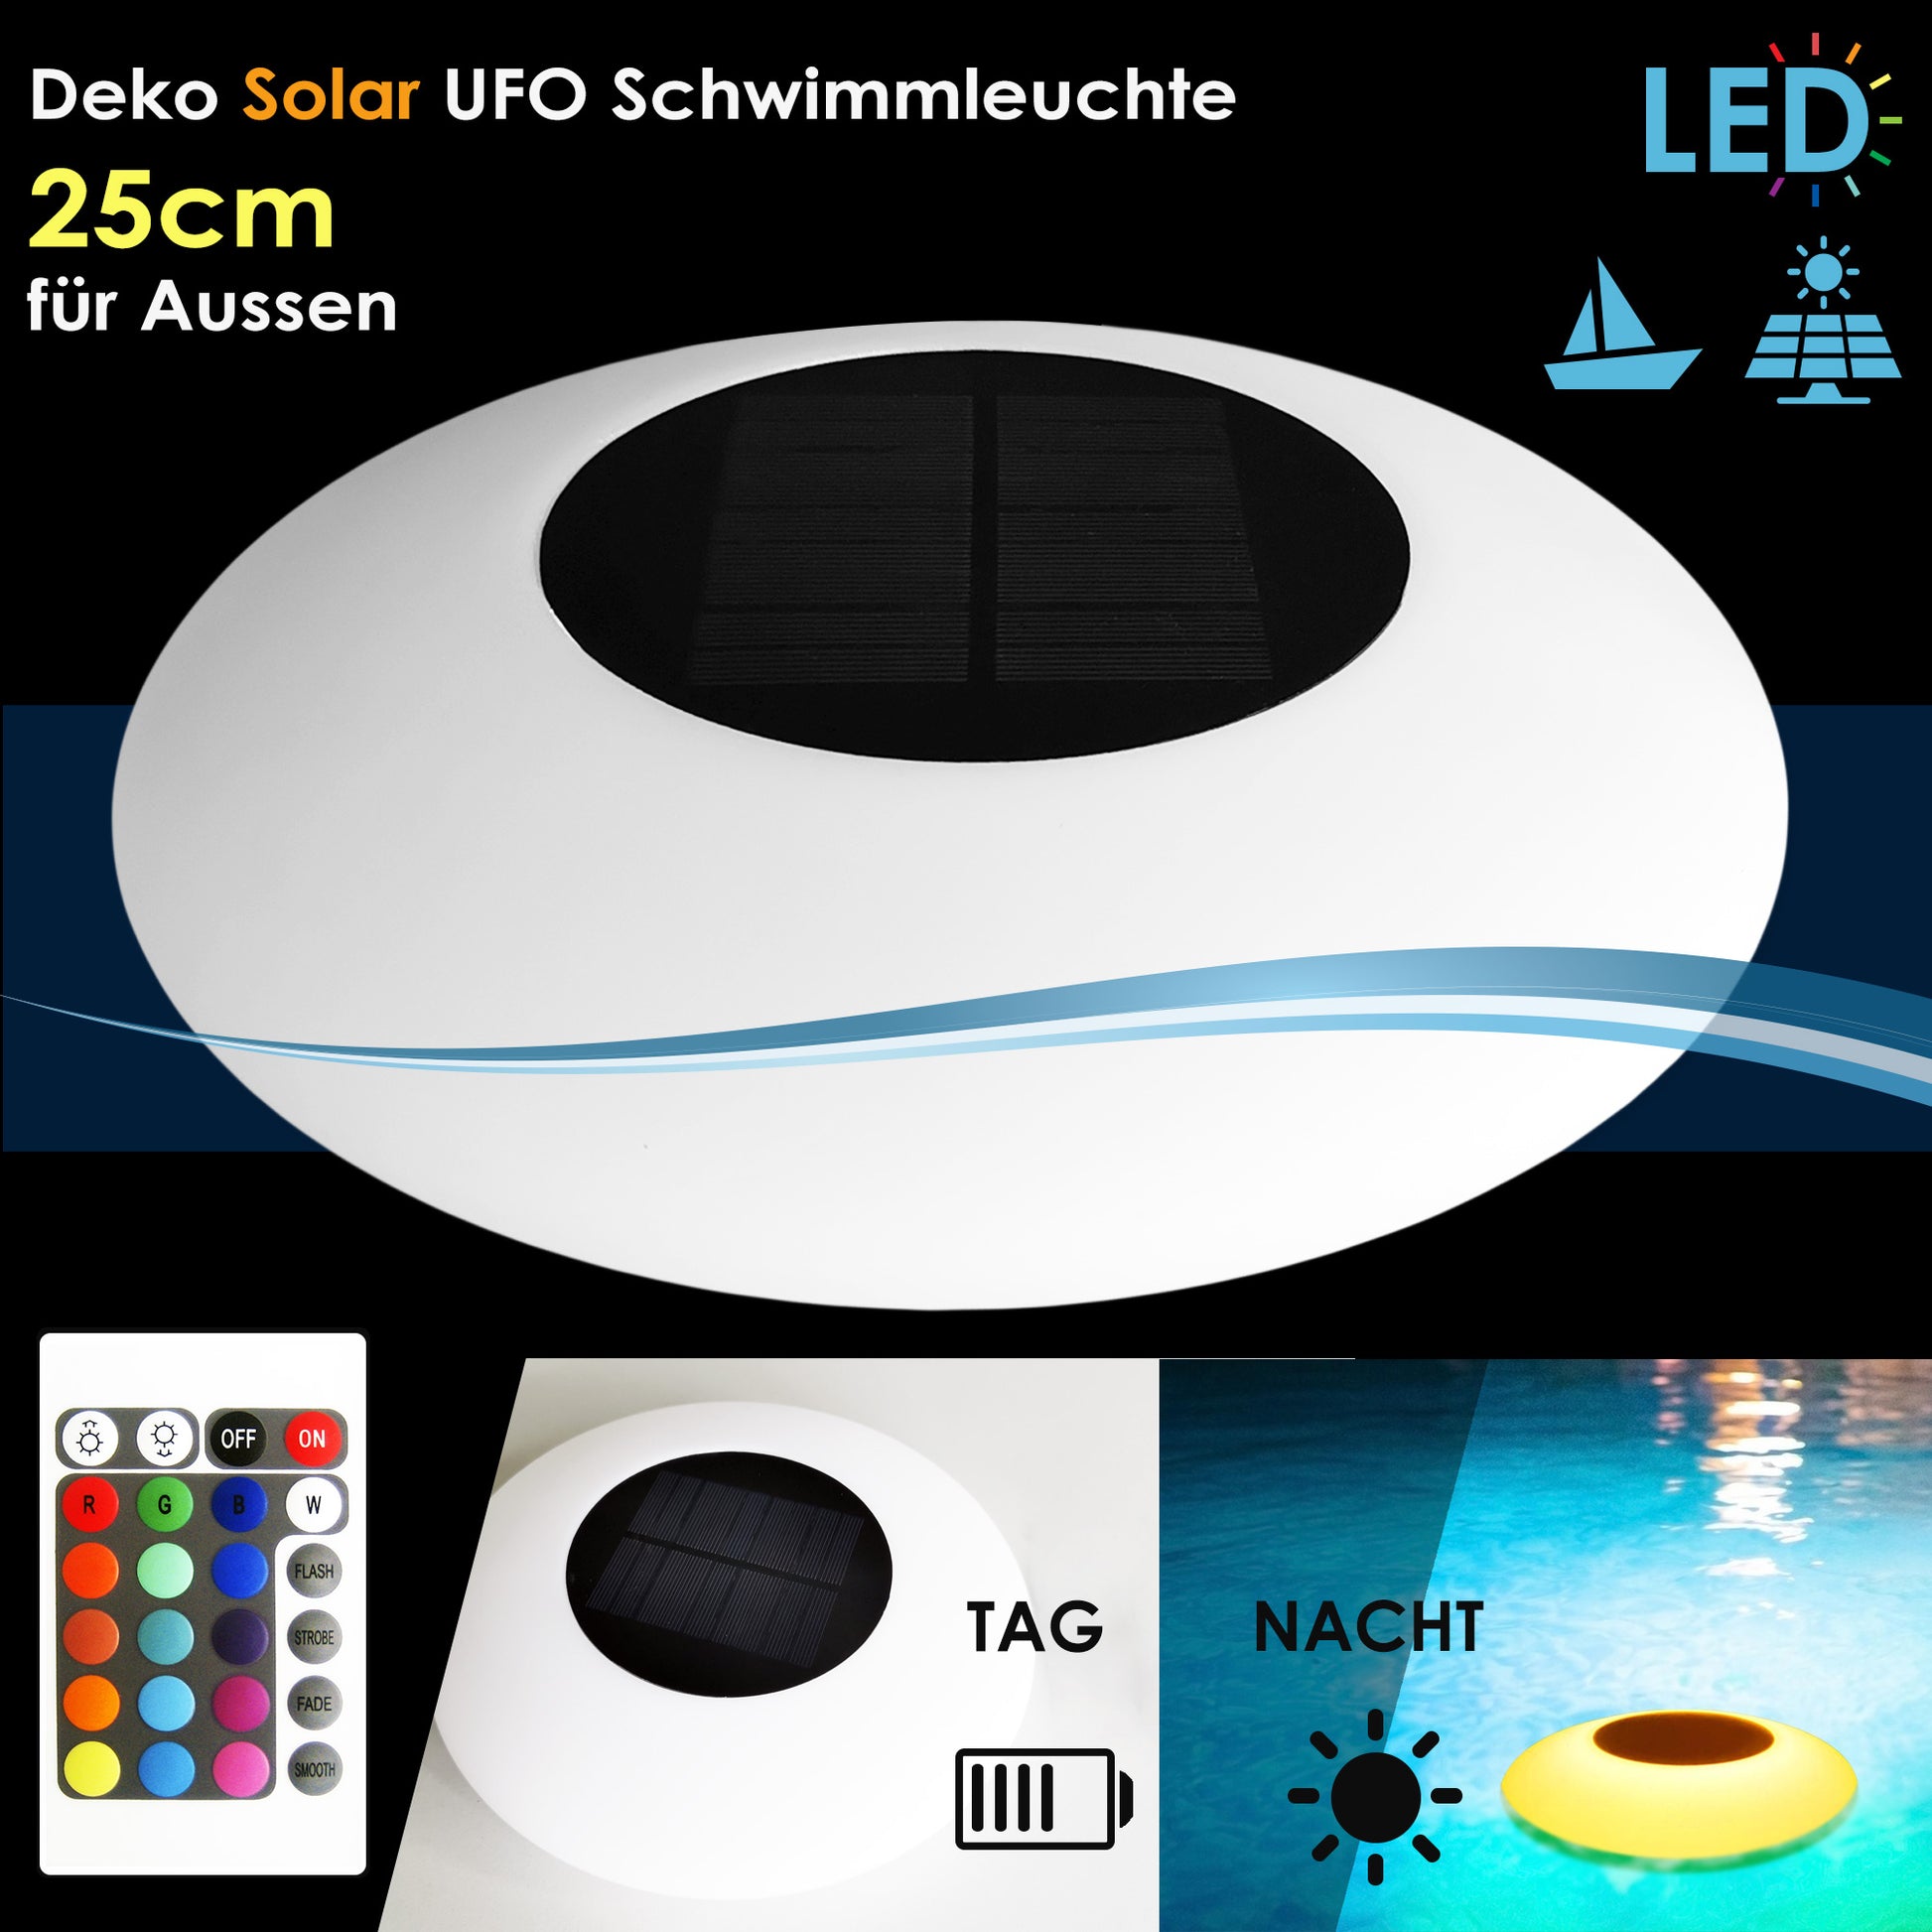 LED schwimmende UFO Solar Lampe 25cm mit Fernbedienung